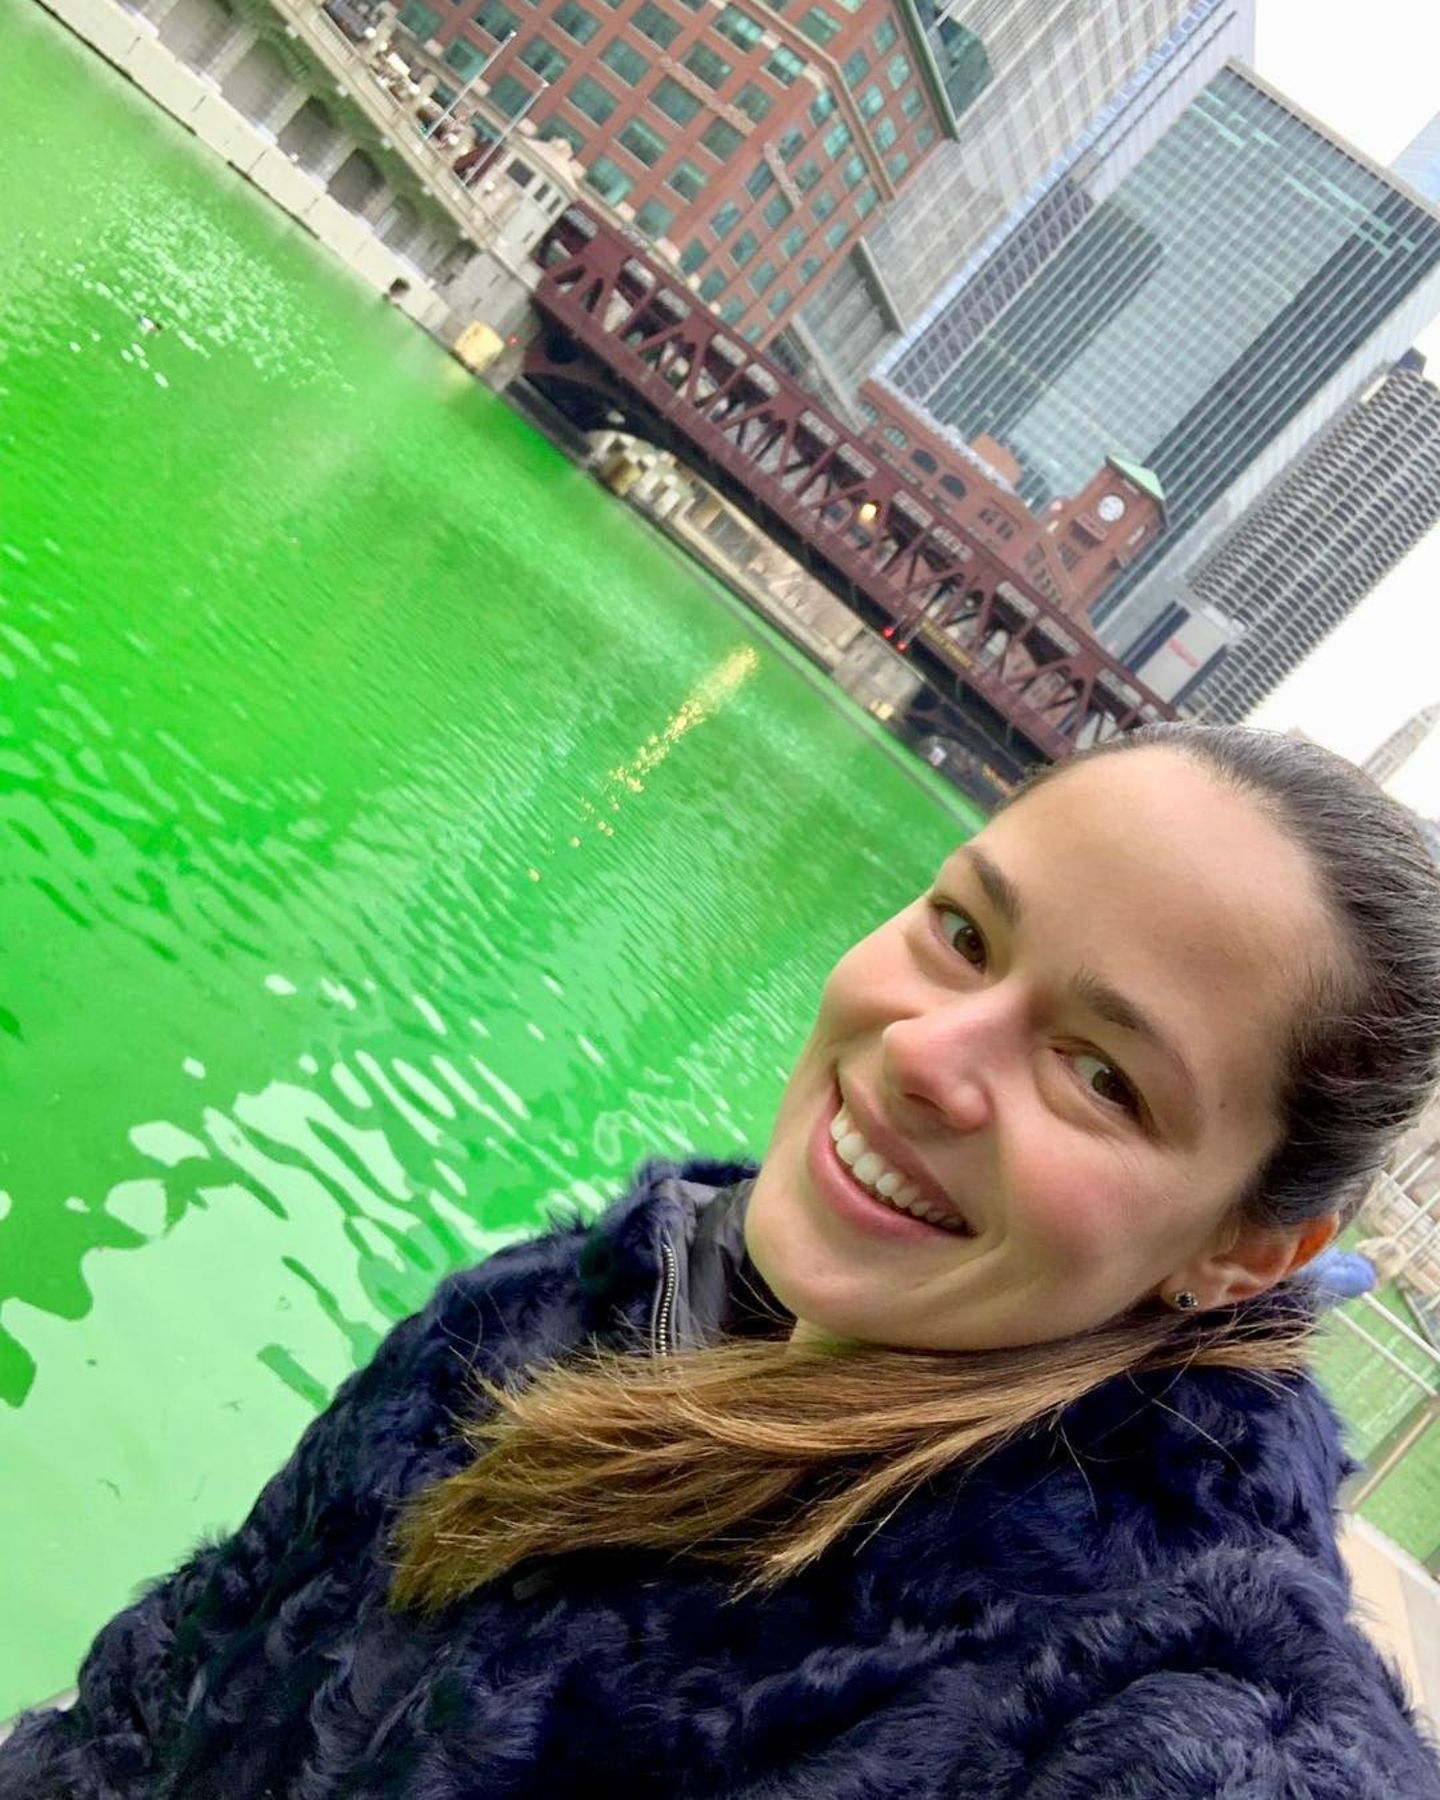 "Keiner feiert den St. Patricks Day wie Chicago", postet Ana Ivanovic. Die Großstadt färbt den Chicago River zum Gedenktag traditionell grün ein.